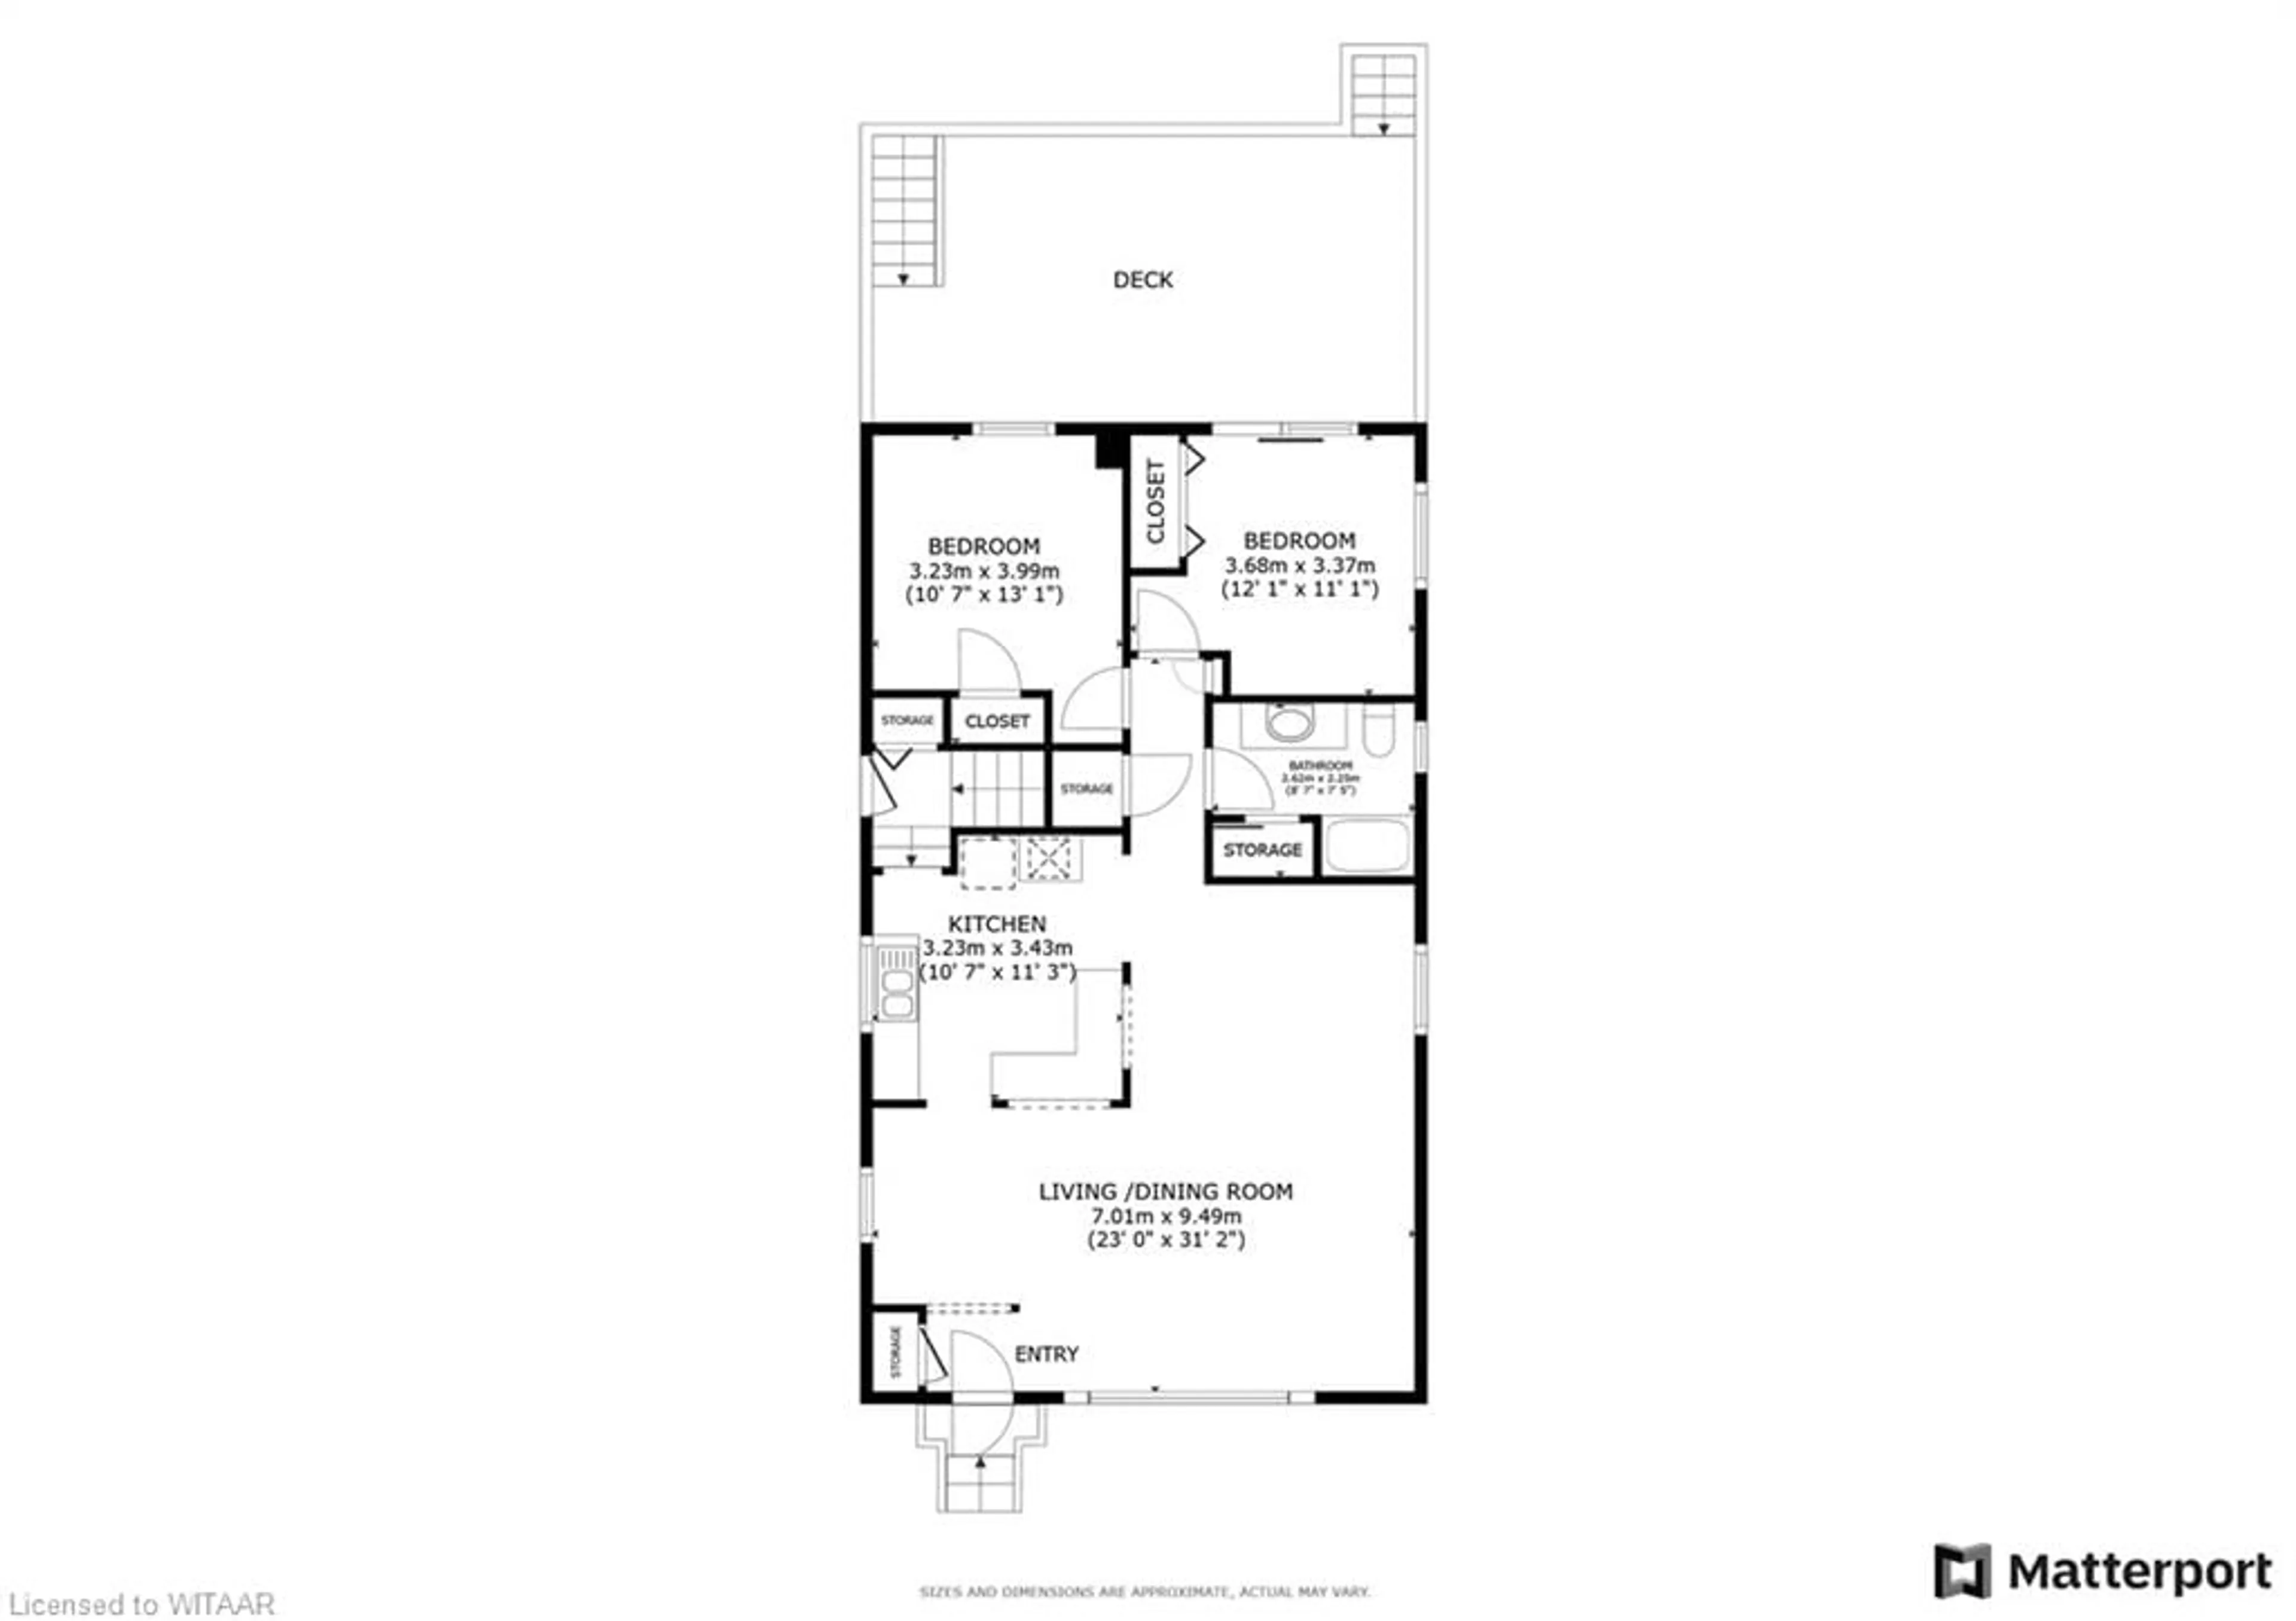 Floor plan for 1010 Sunset Blvd, Woodstock Ontario N4S 8C4